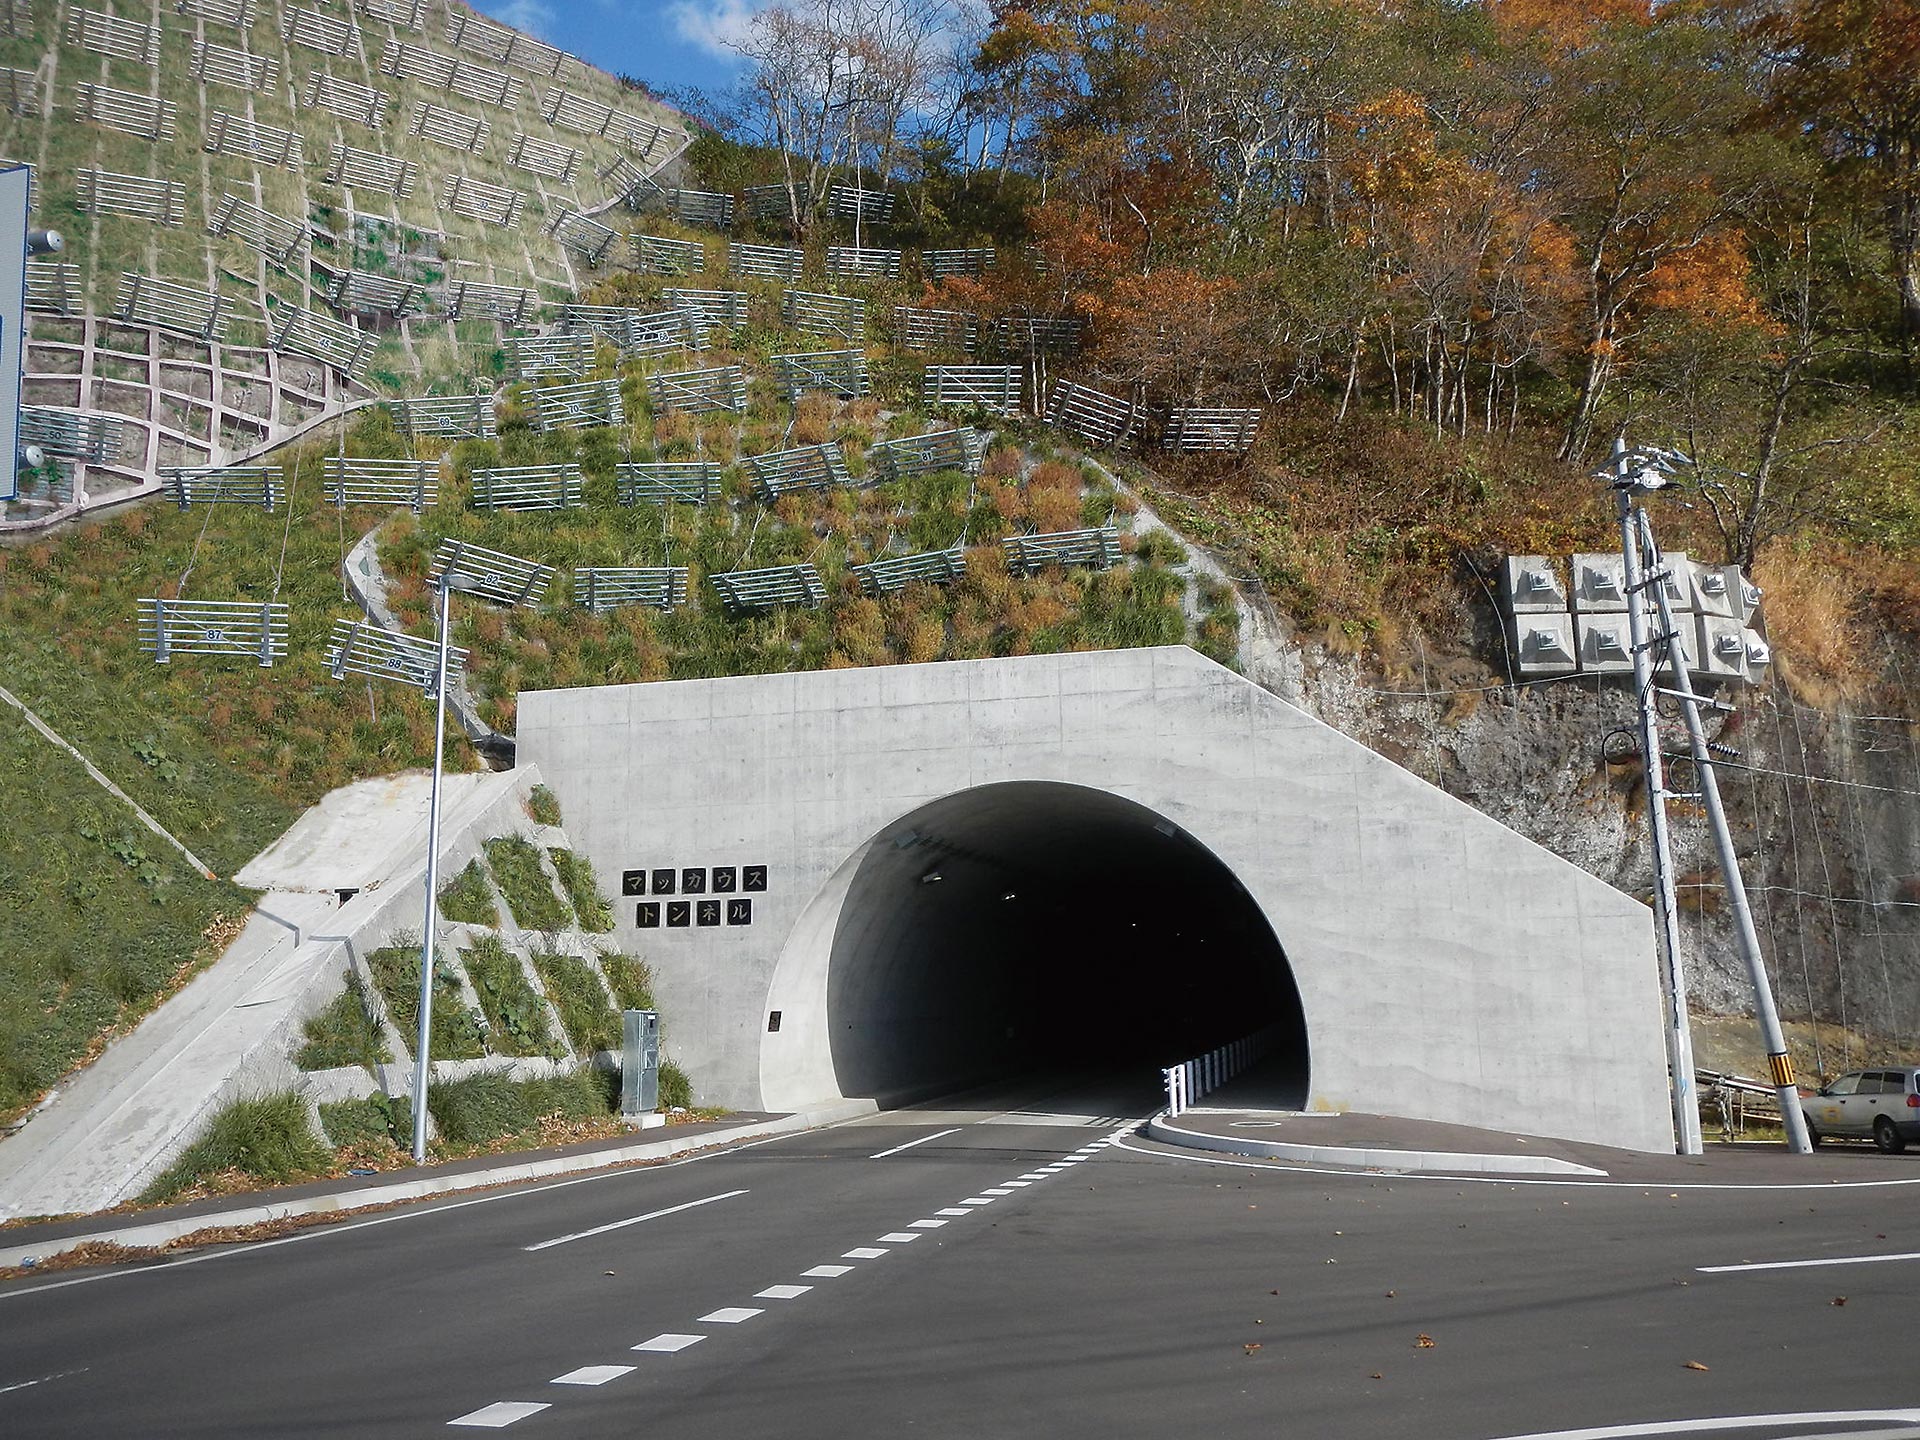 マッカウストンネル全景